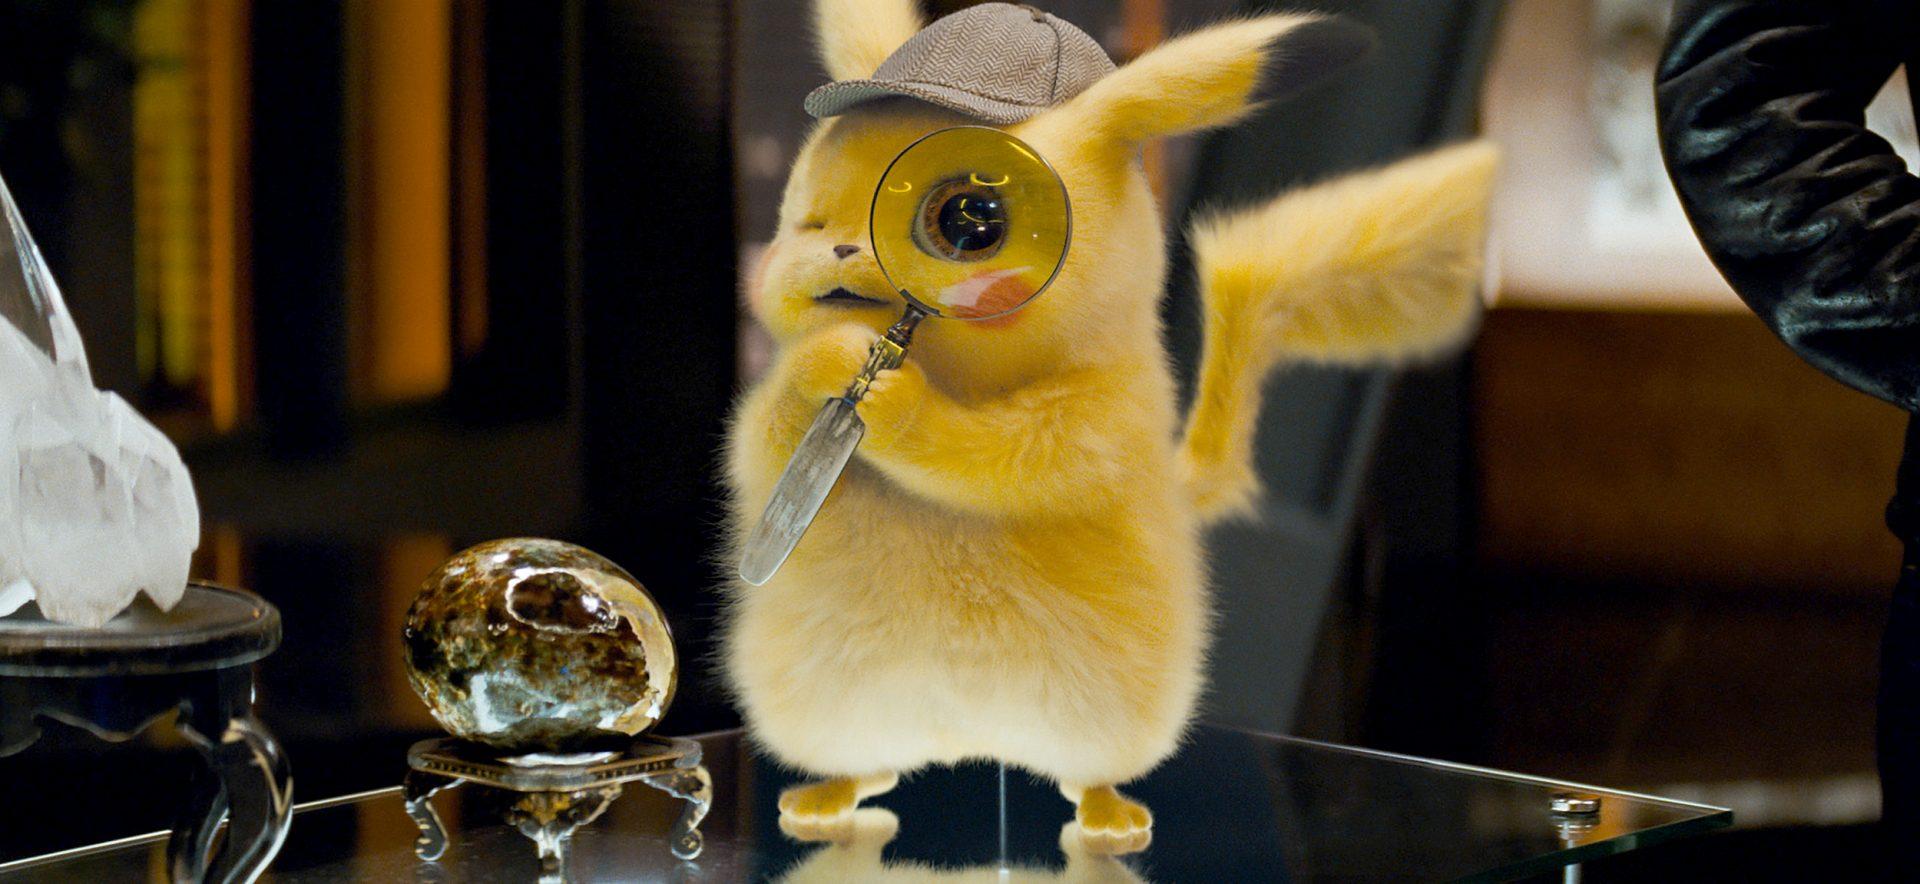 Detetive Pikachu foi filmado em película para emular a estética de Blade Runner